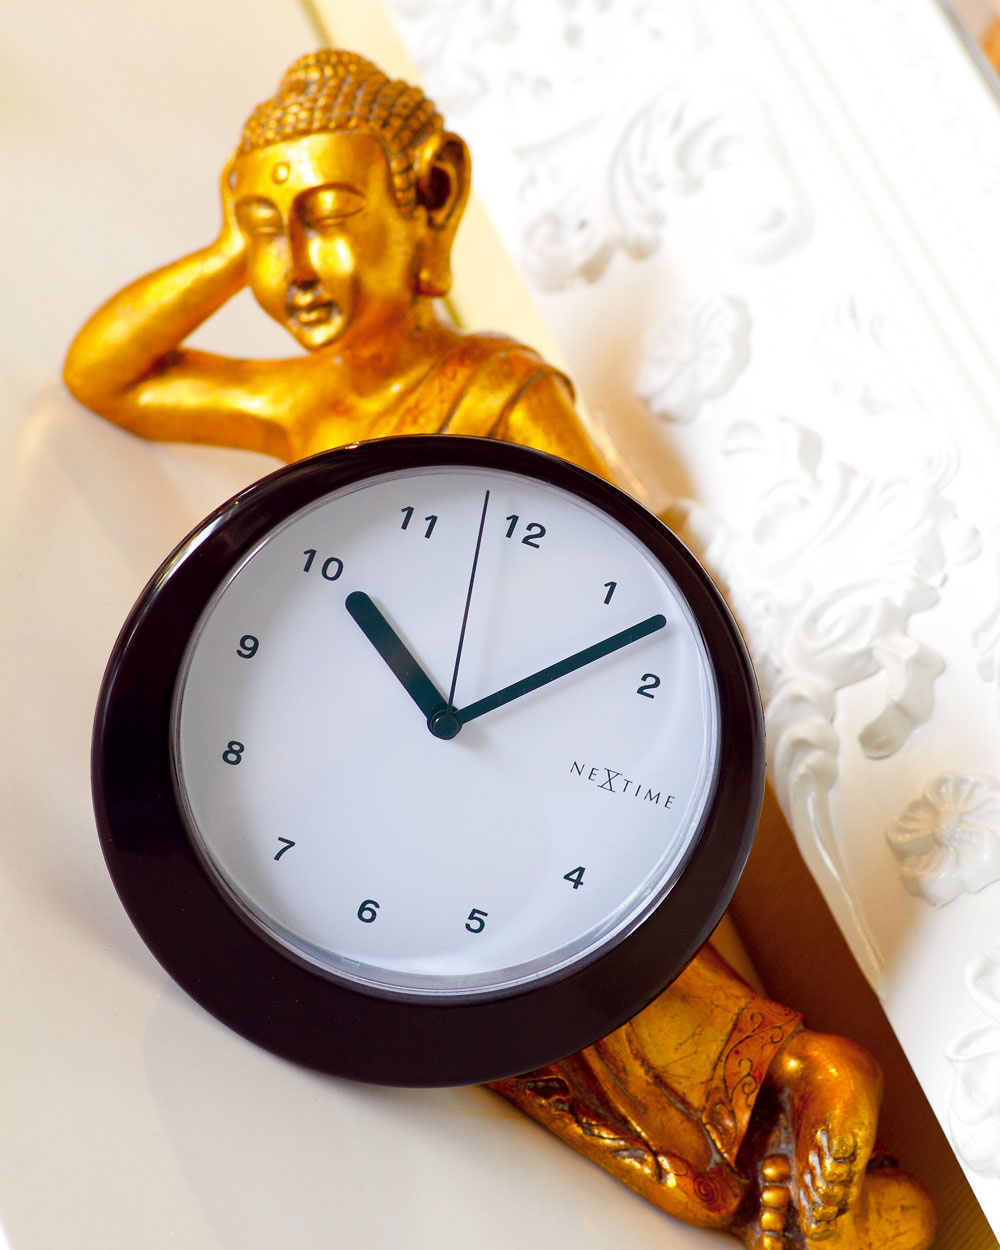 Stolové hodiny Balance z plastu, s priemerom 18,5 cm. Cena 35 €. Predáva Design House.